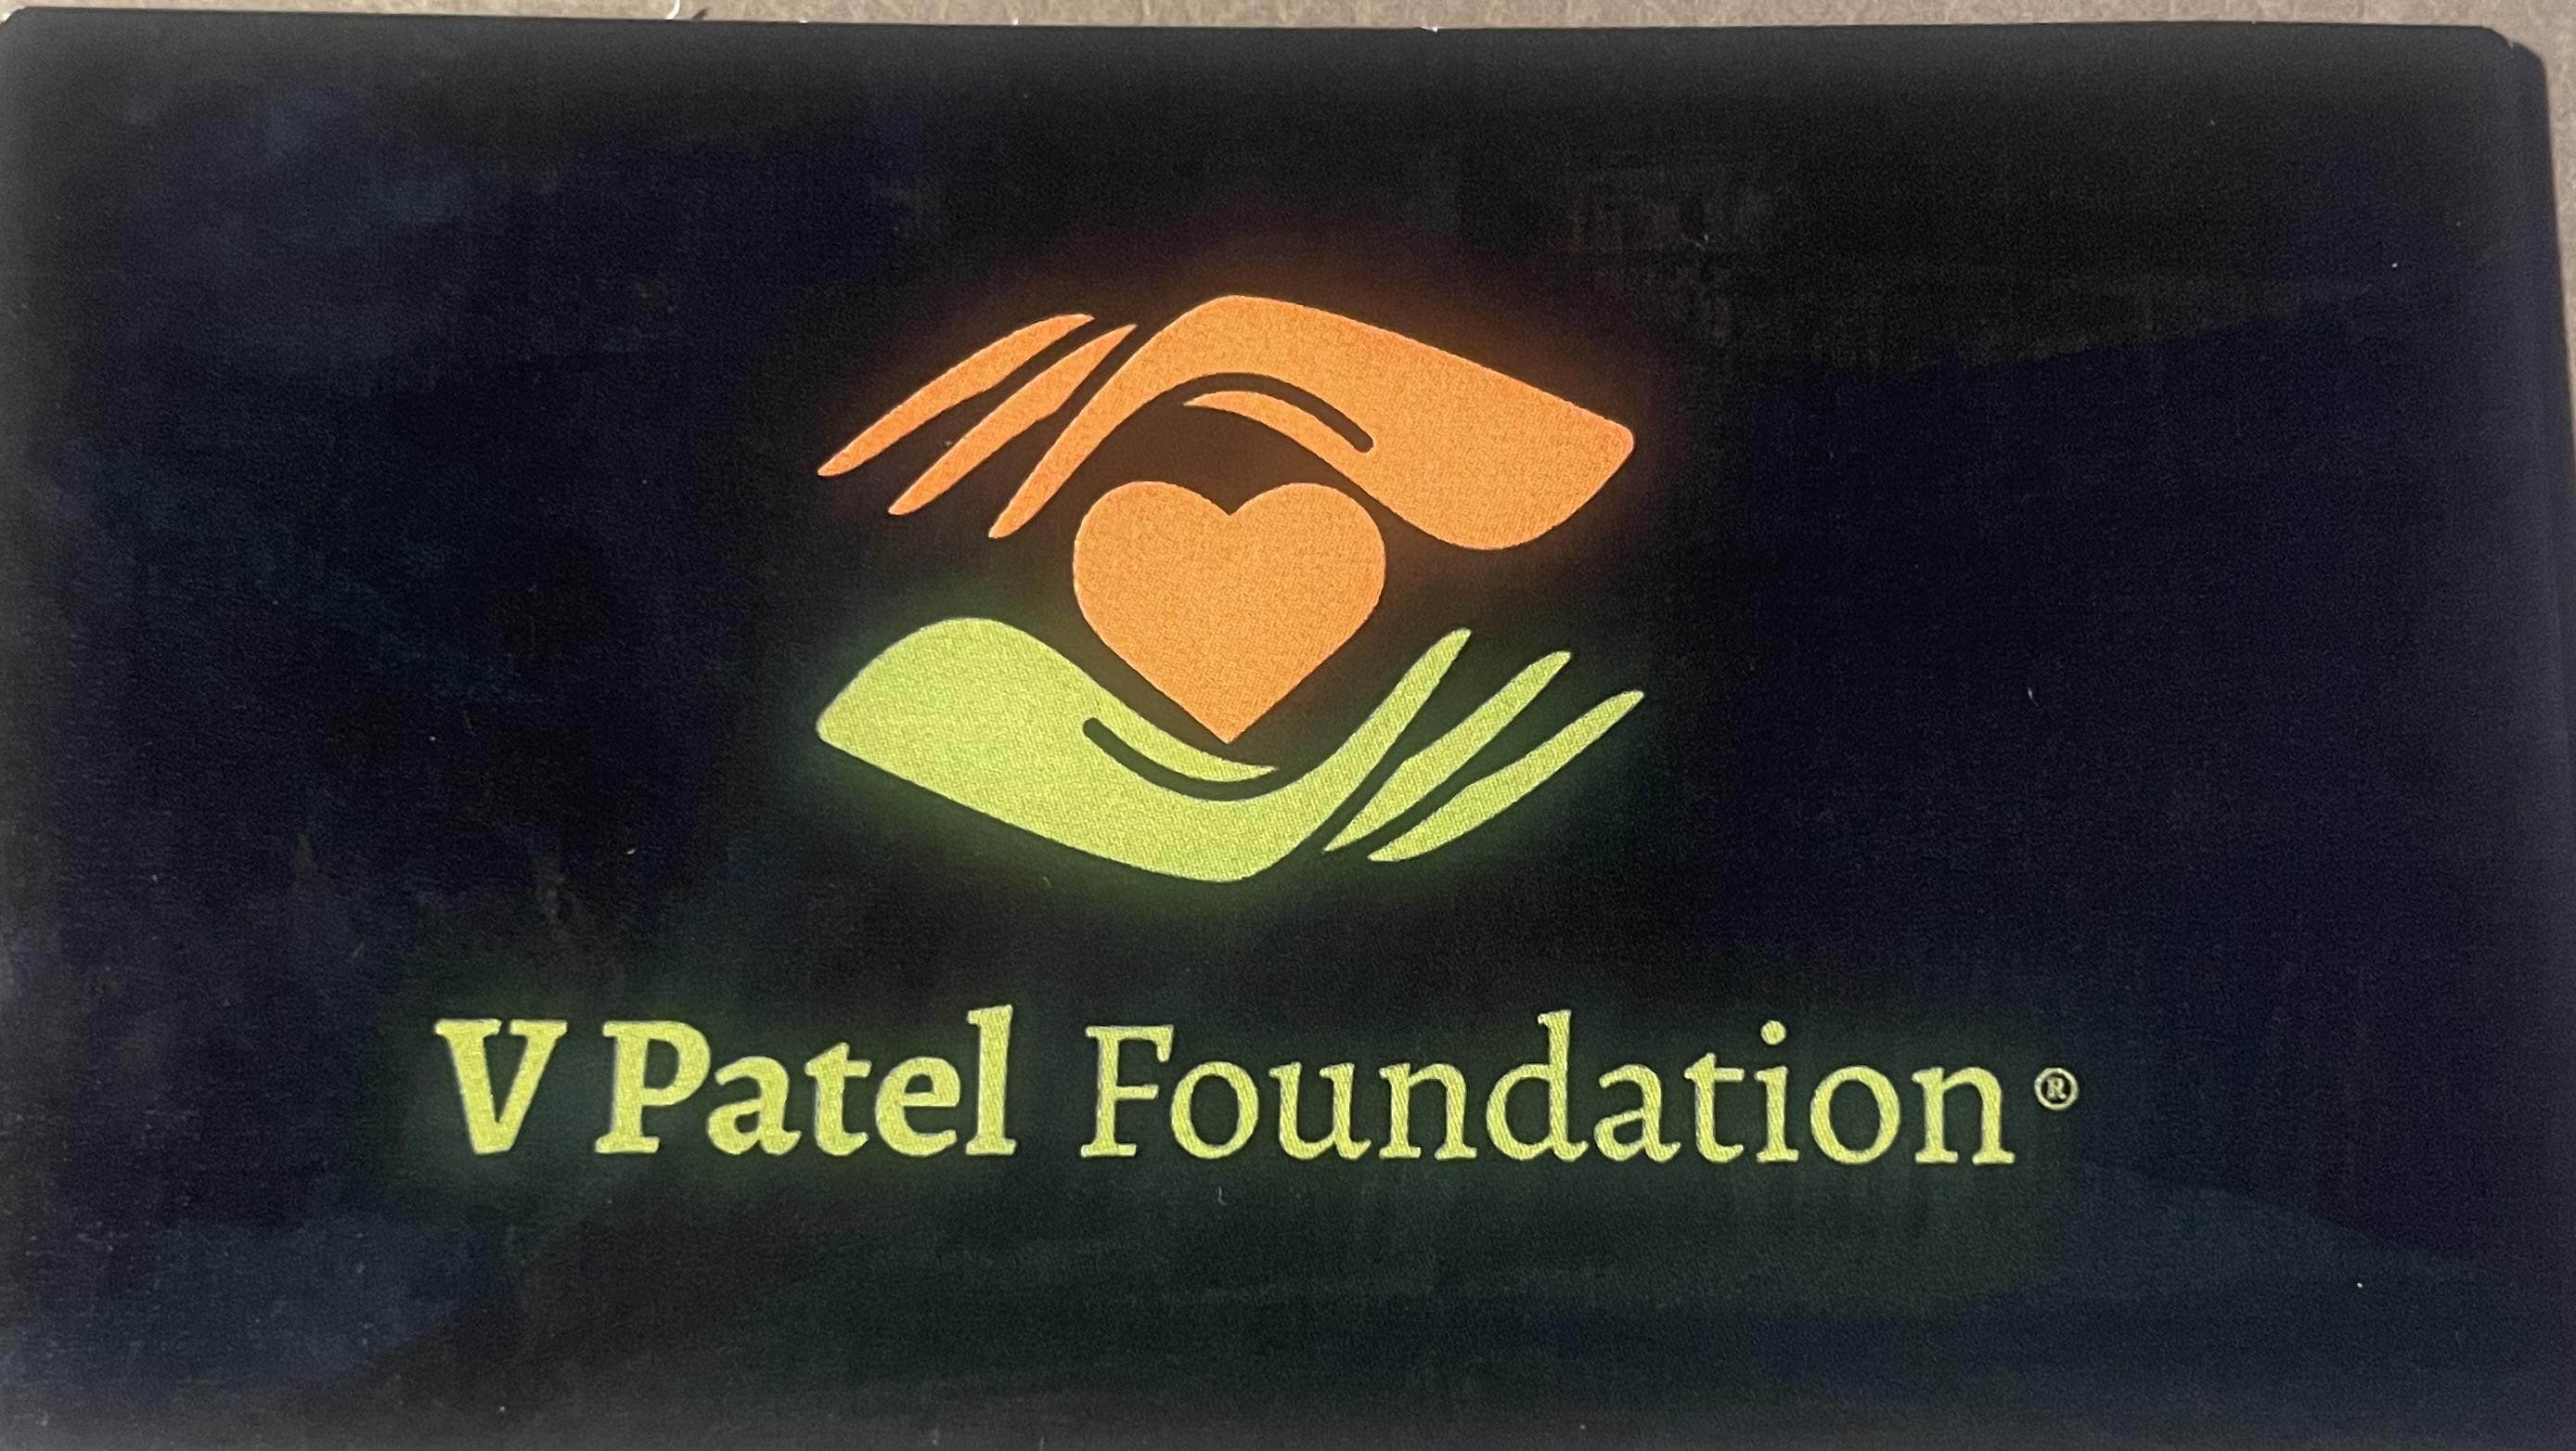 V Patel Foundation